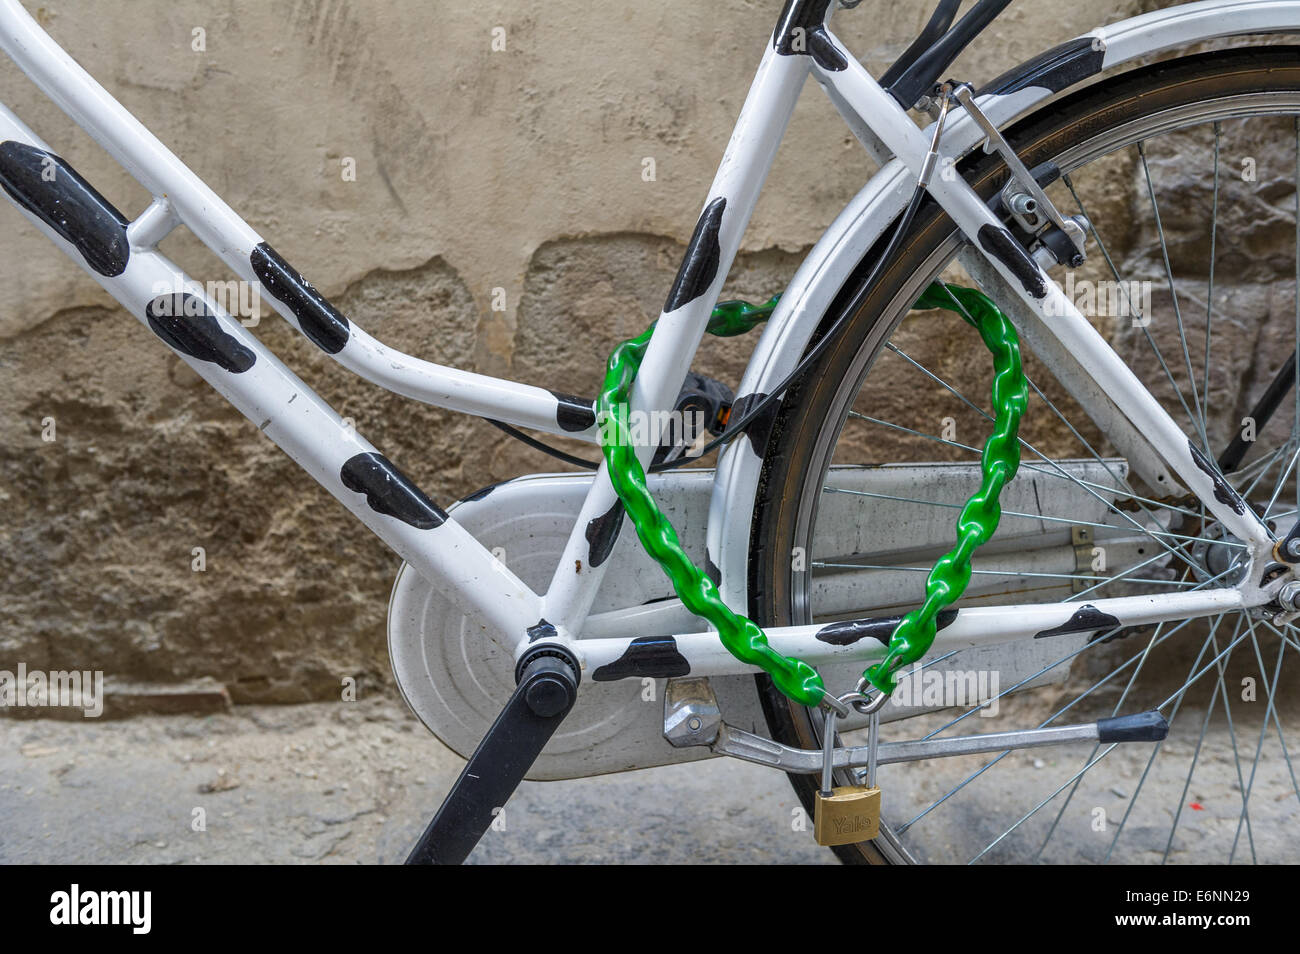 L'article cycle noir et blanc avec des cadenas de vélo vert. Banque D'Images